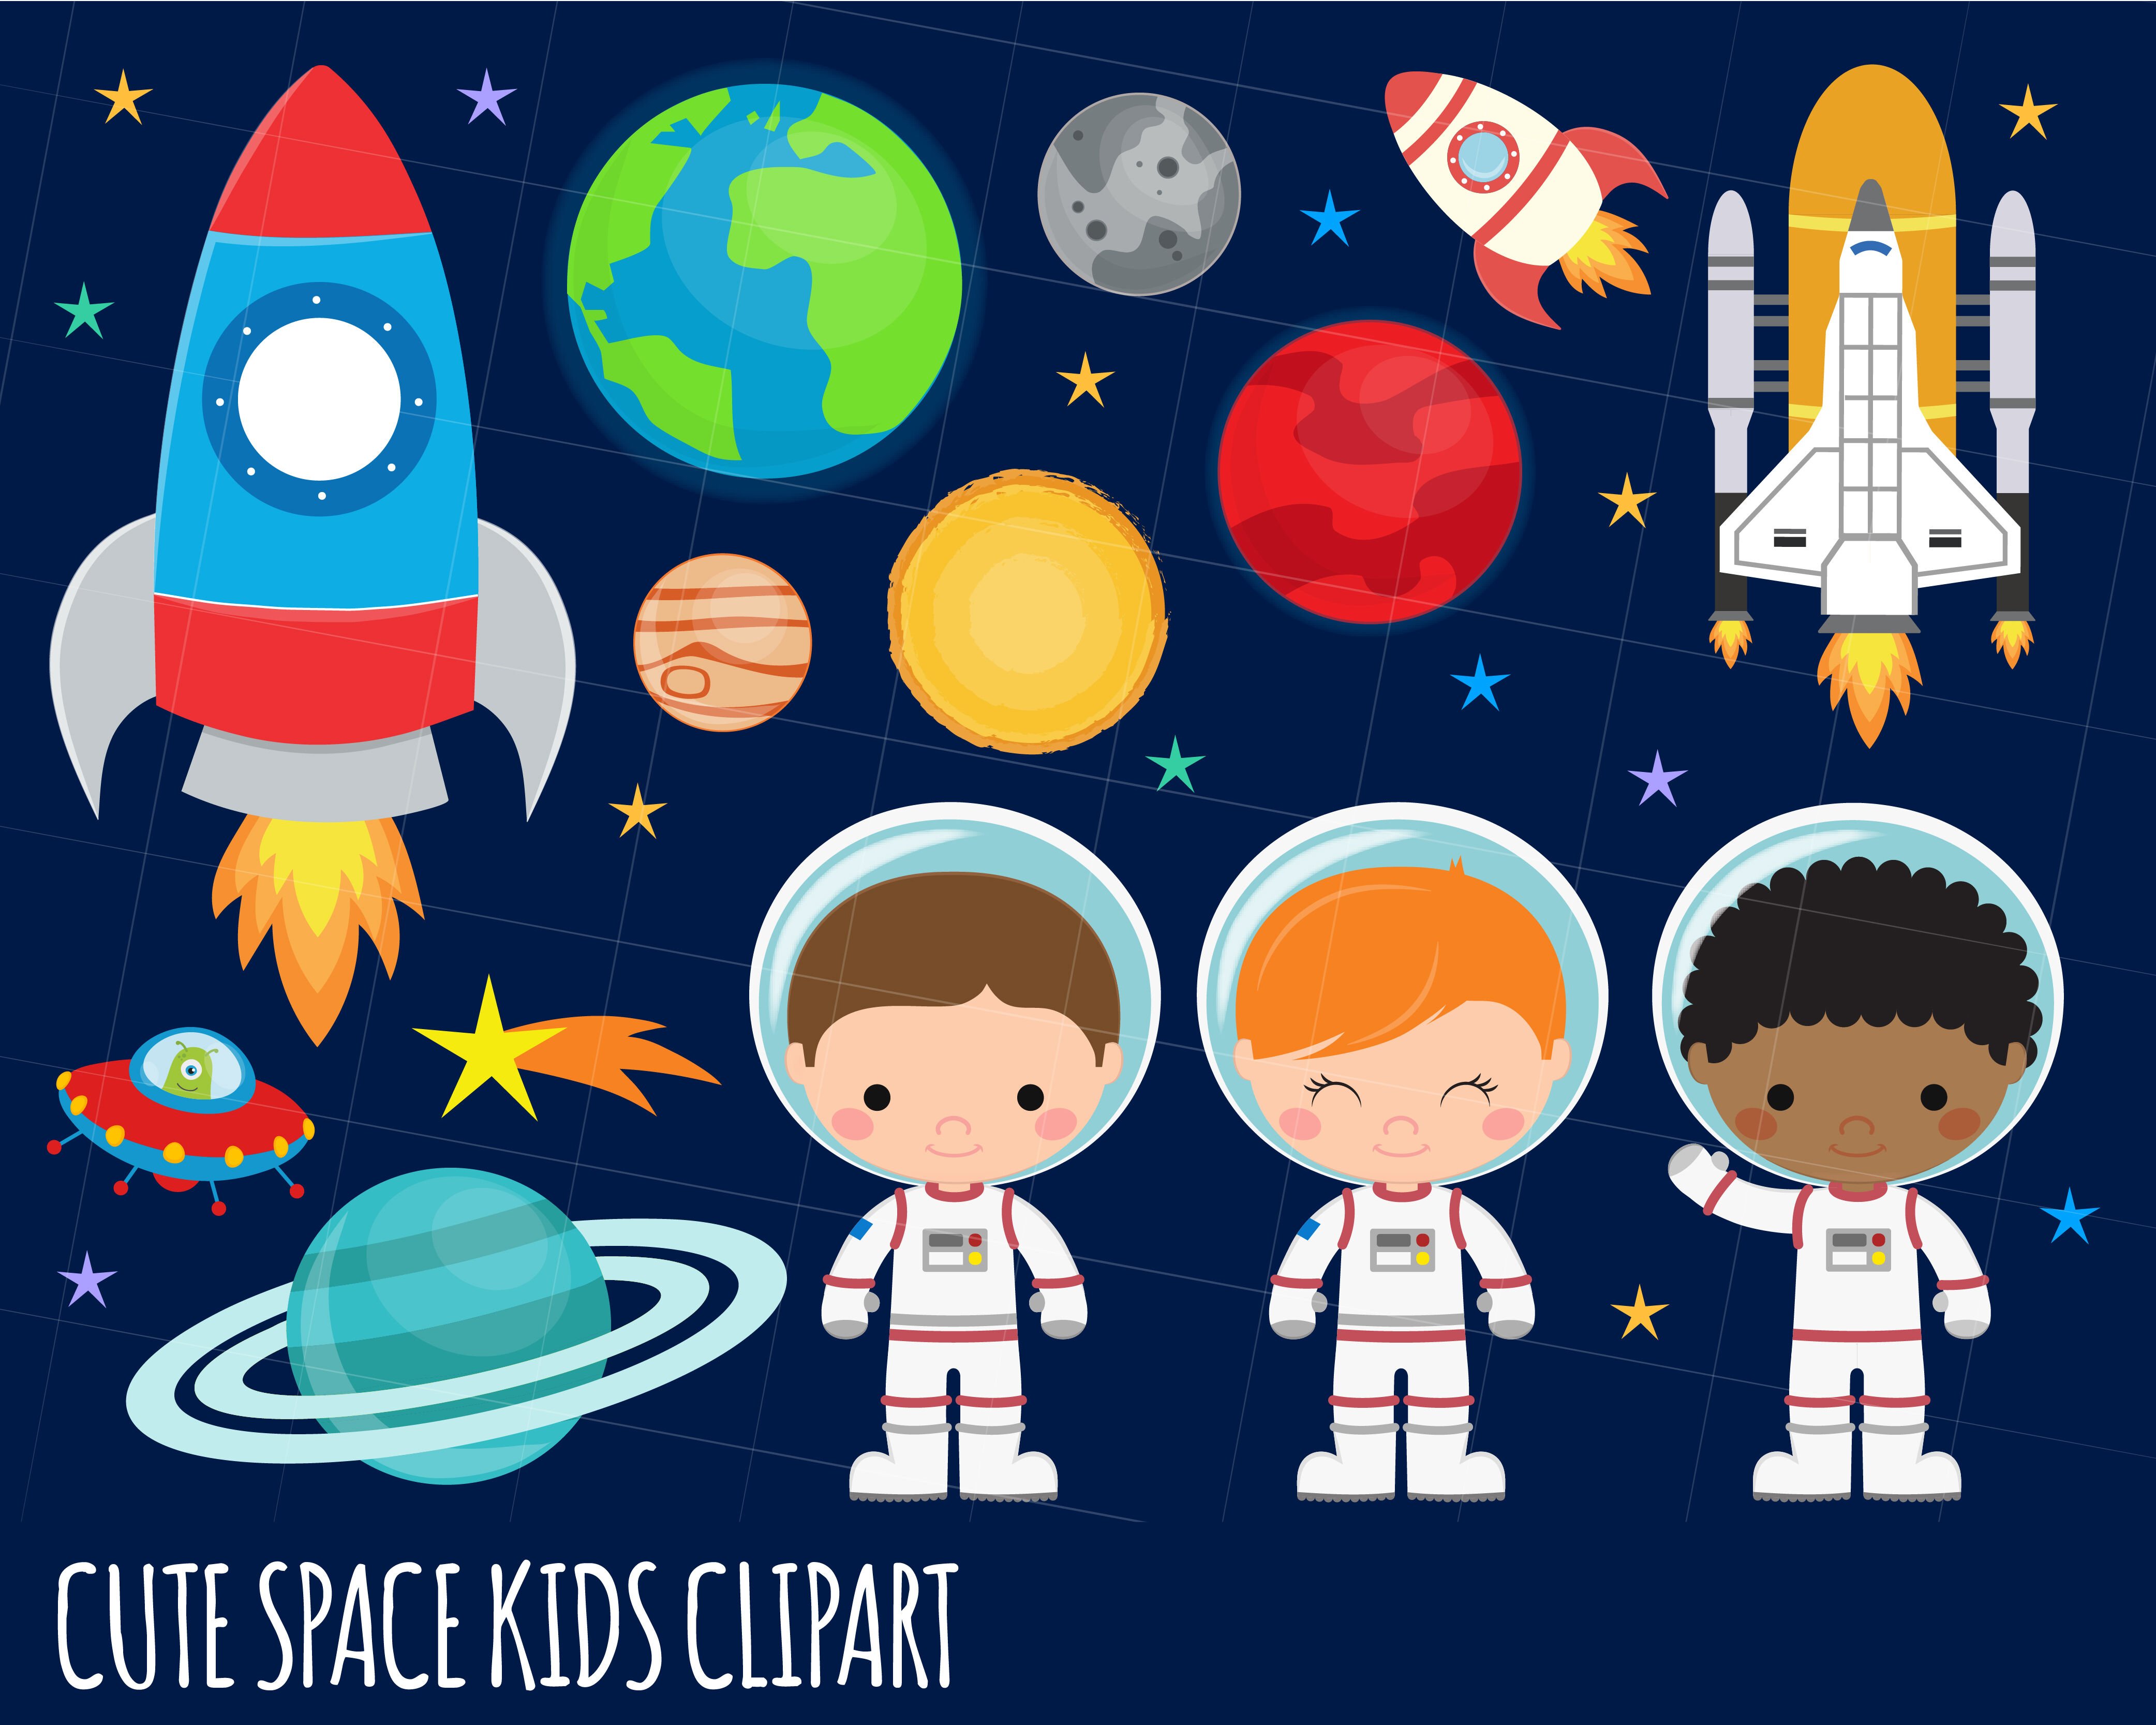 Космонавт картинки для детей дошкольного возраста. Космос для детей дошкольного возраста. Космос иллюстрация. Детям о космосе. Тема космос для детей.